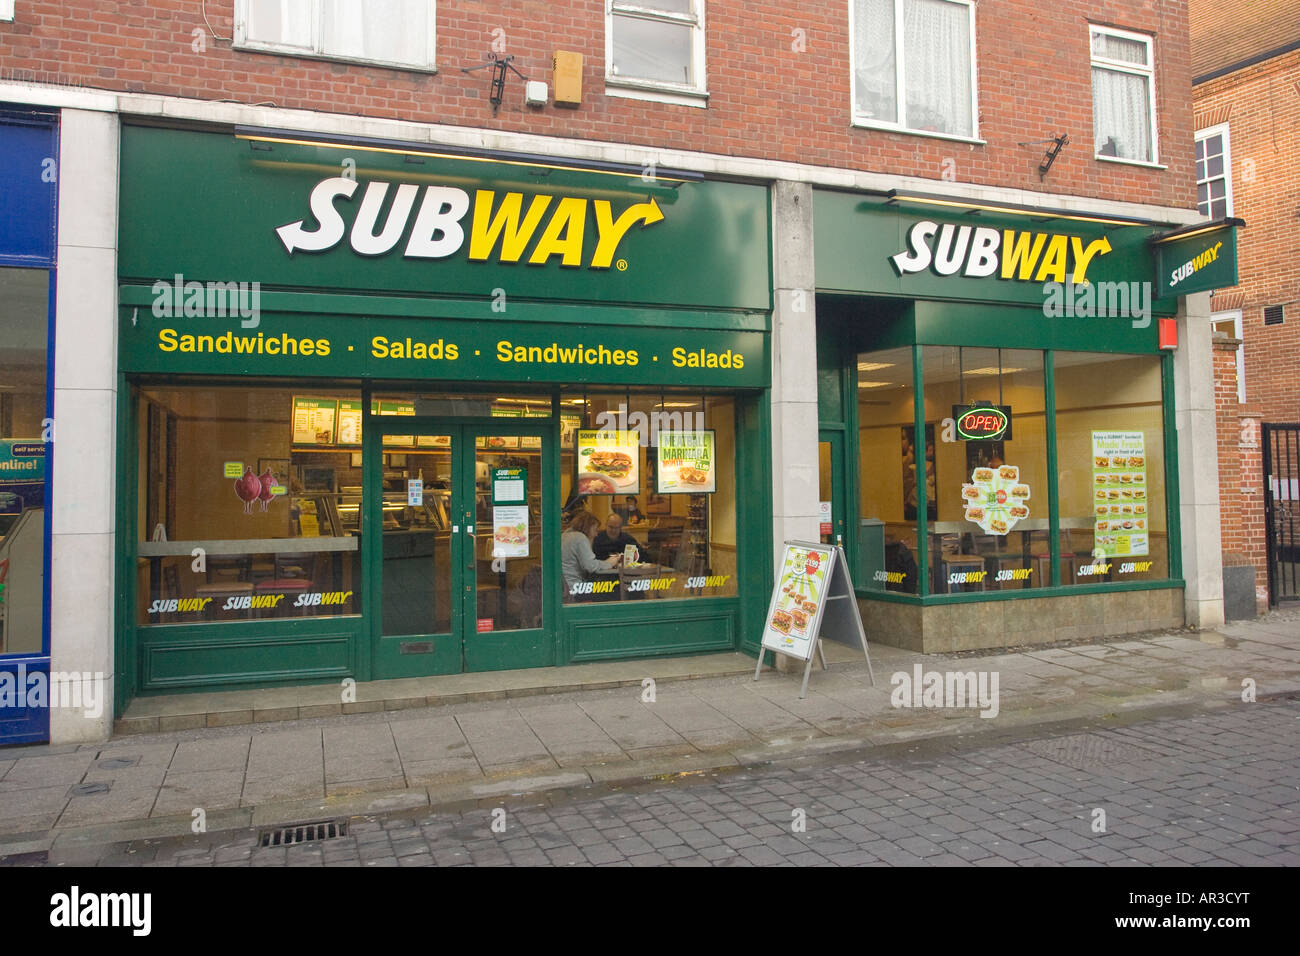 Subway restaurant in UK Stock Photo